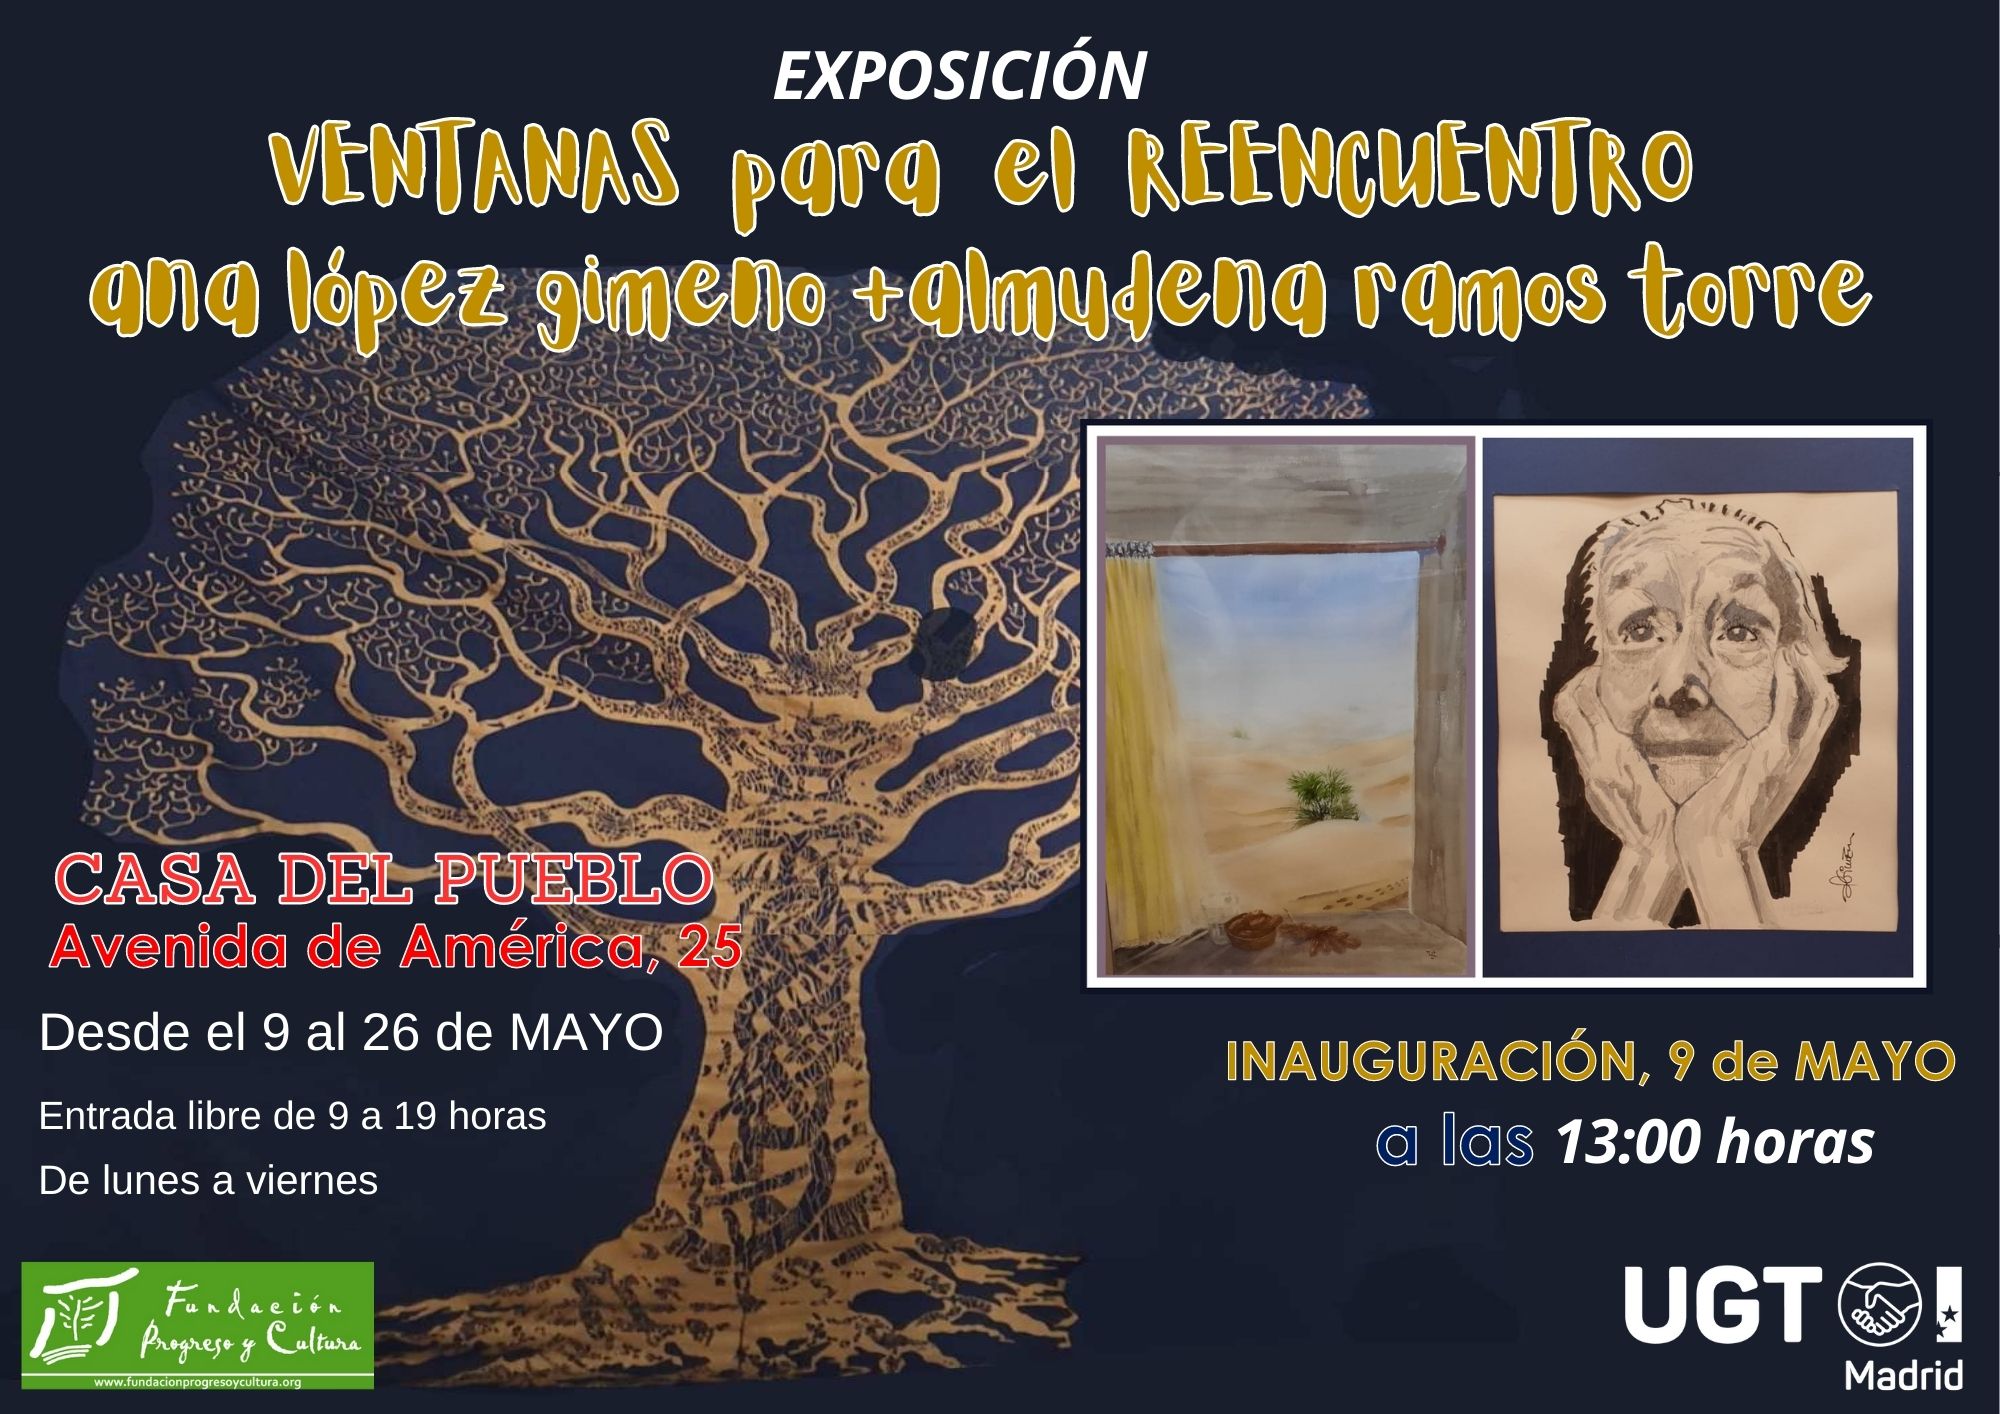 Exposición de acuarelas "Ventanas para el reencuentro" de Ana López Gimeno y Almudena Ramos Torre